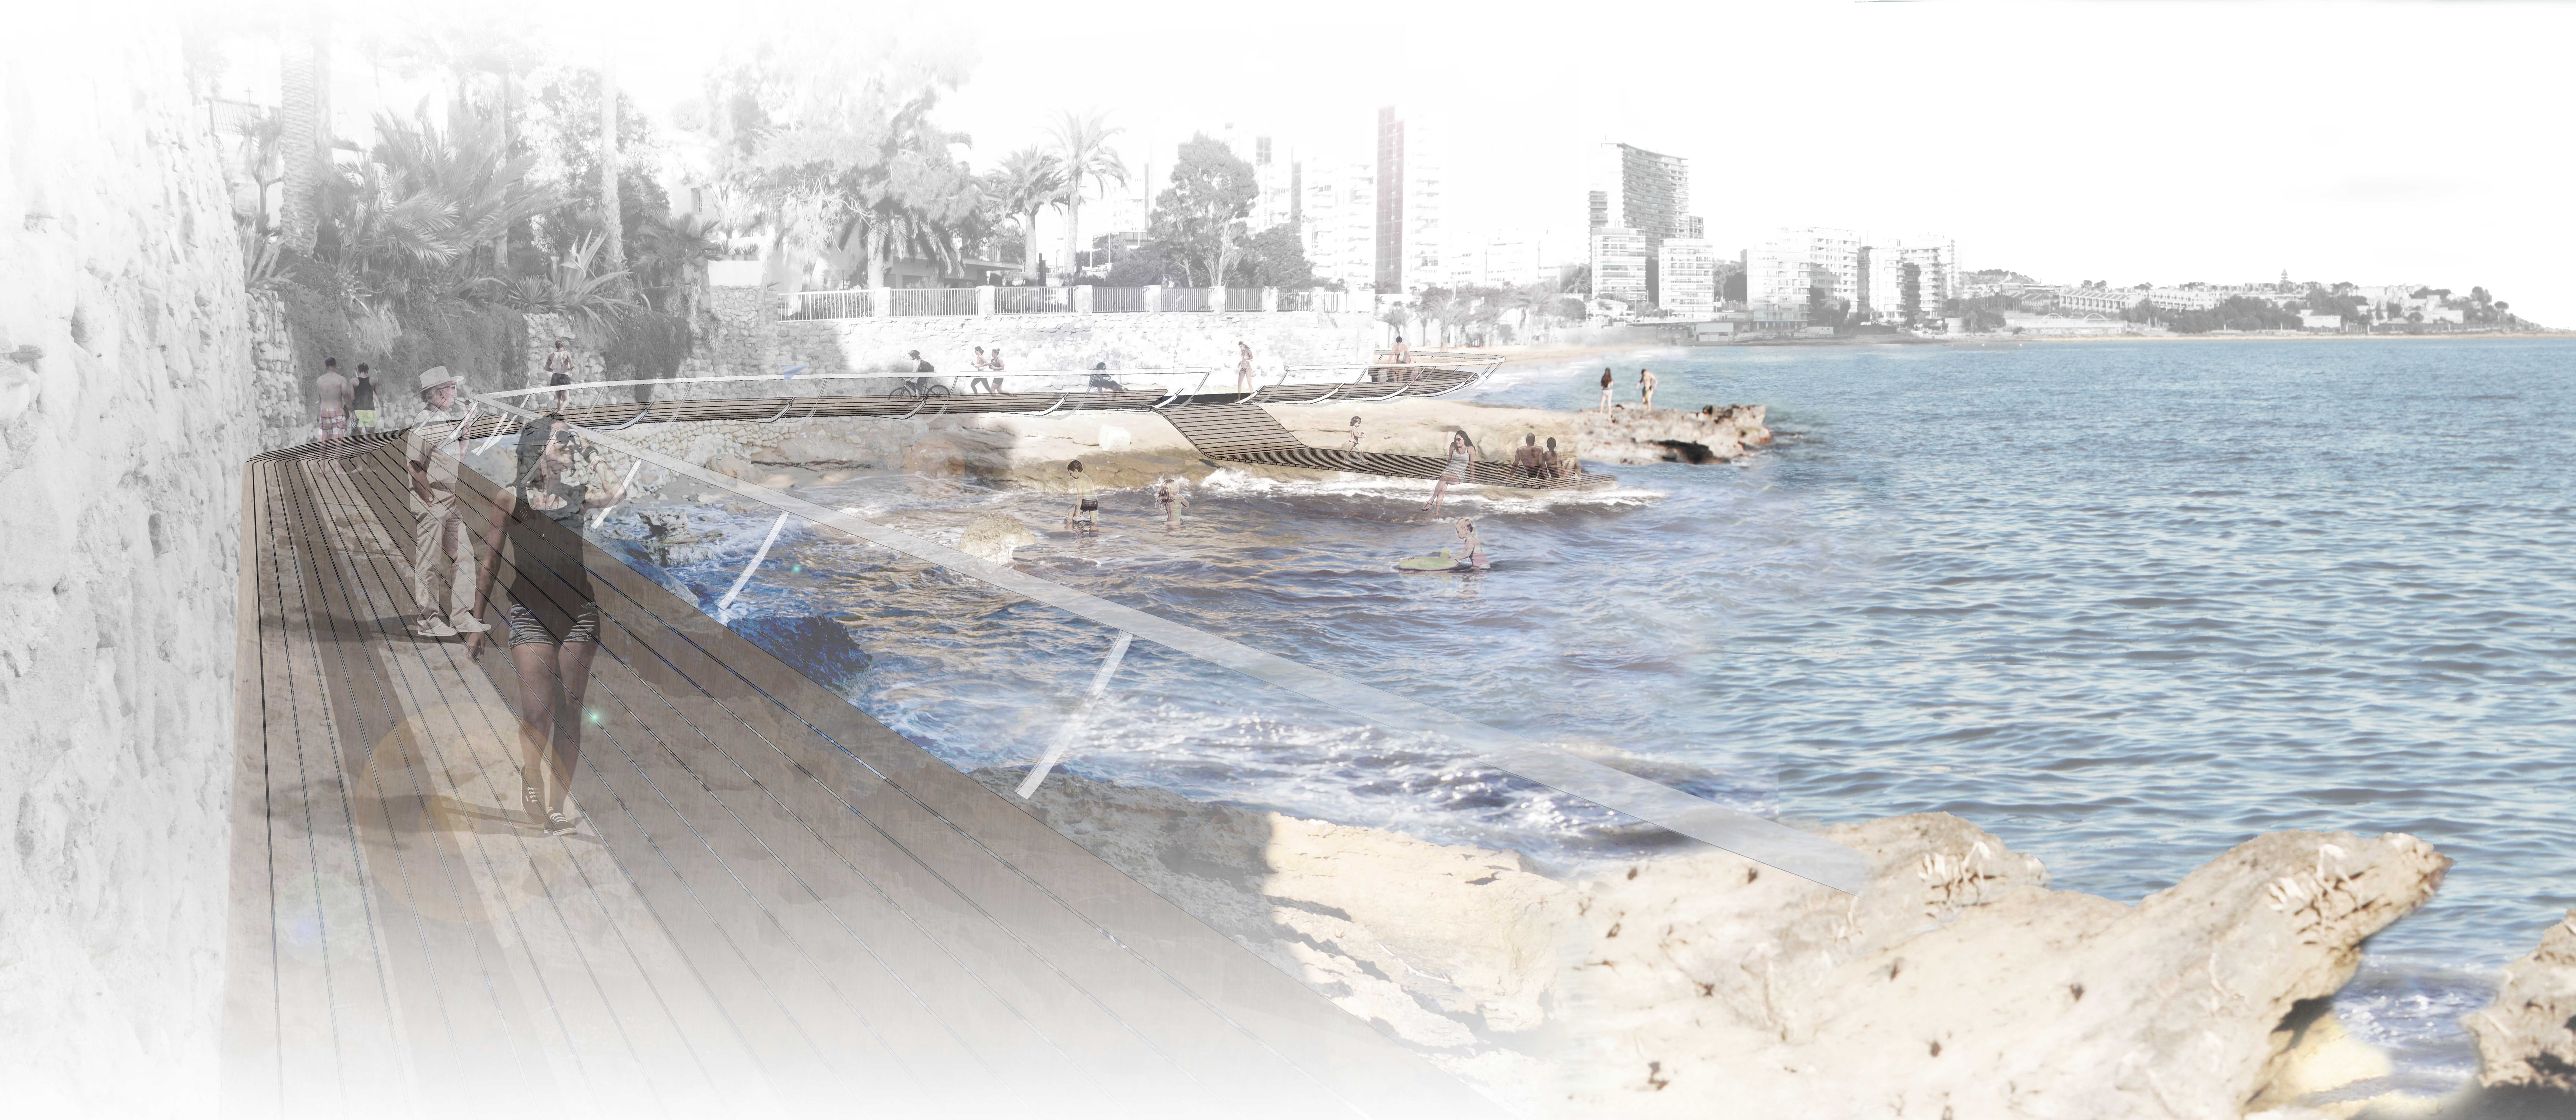 Cinco ideas llamadas a transformar el litoral de la ciudad de Alicante